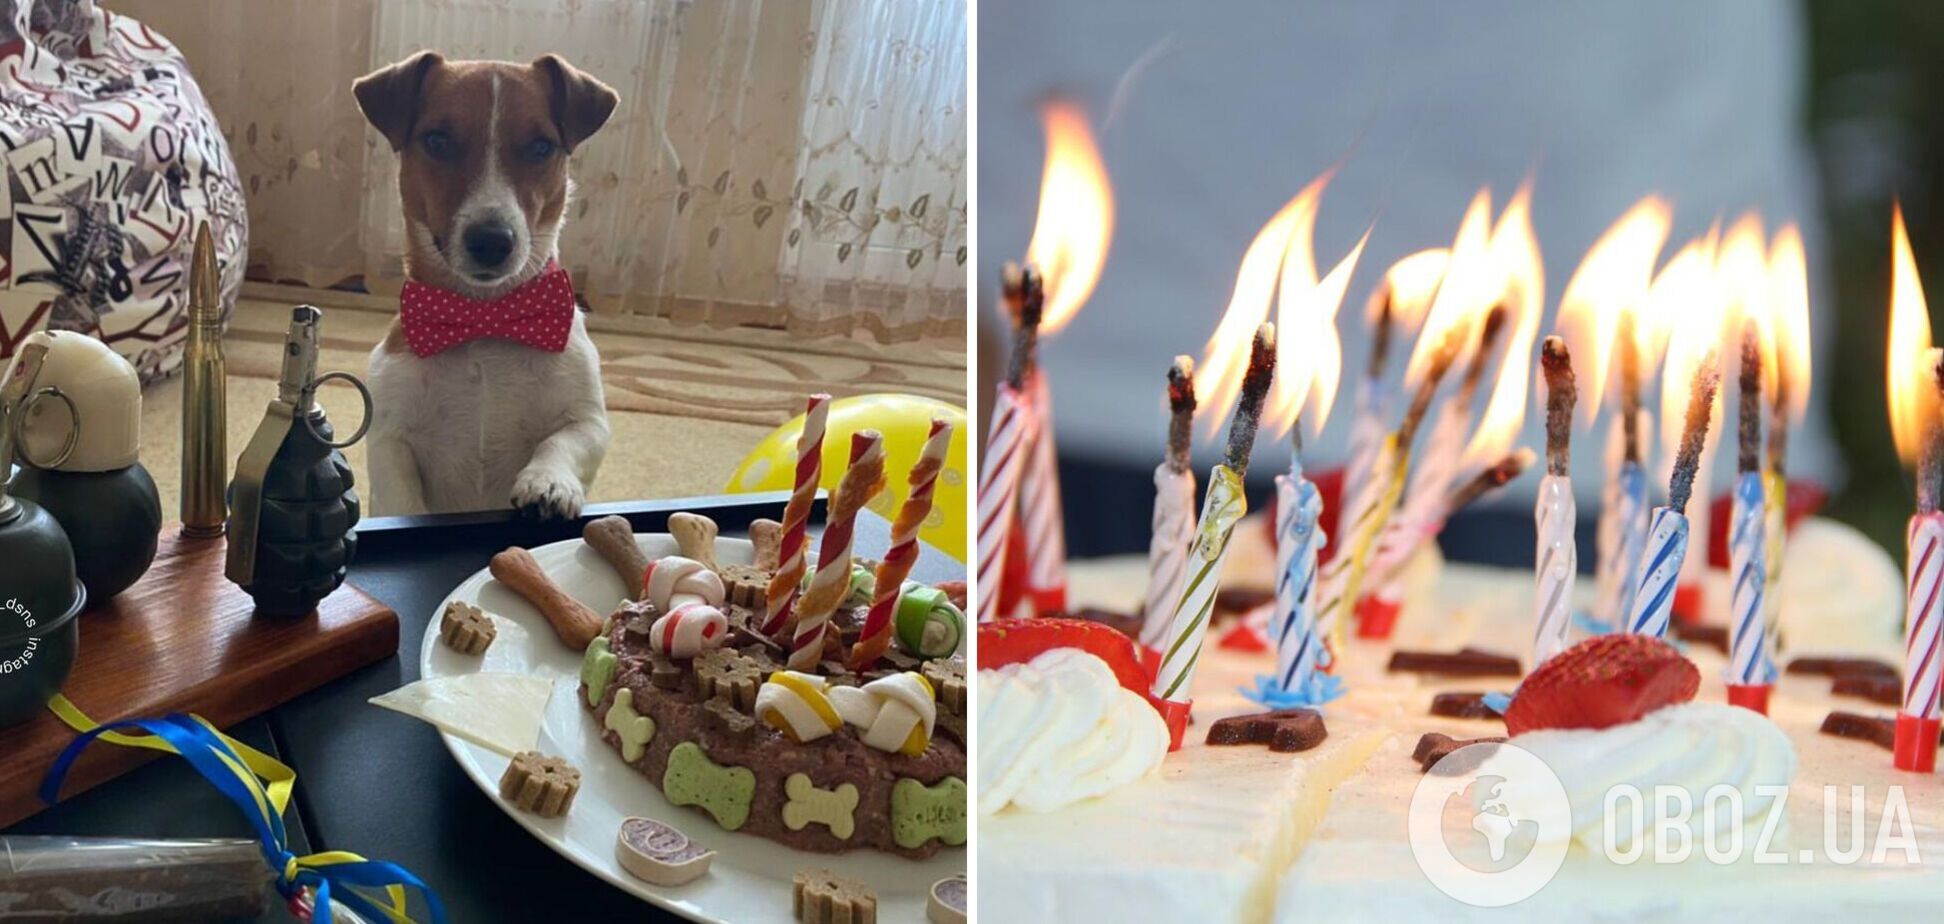 Любимец украинцев пес Патрон празднует день рождения: появились яркие фото